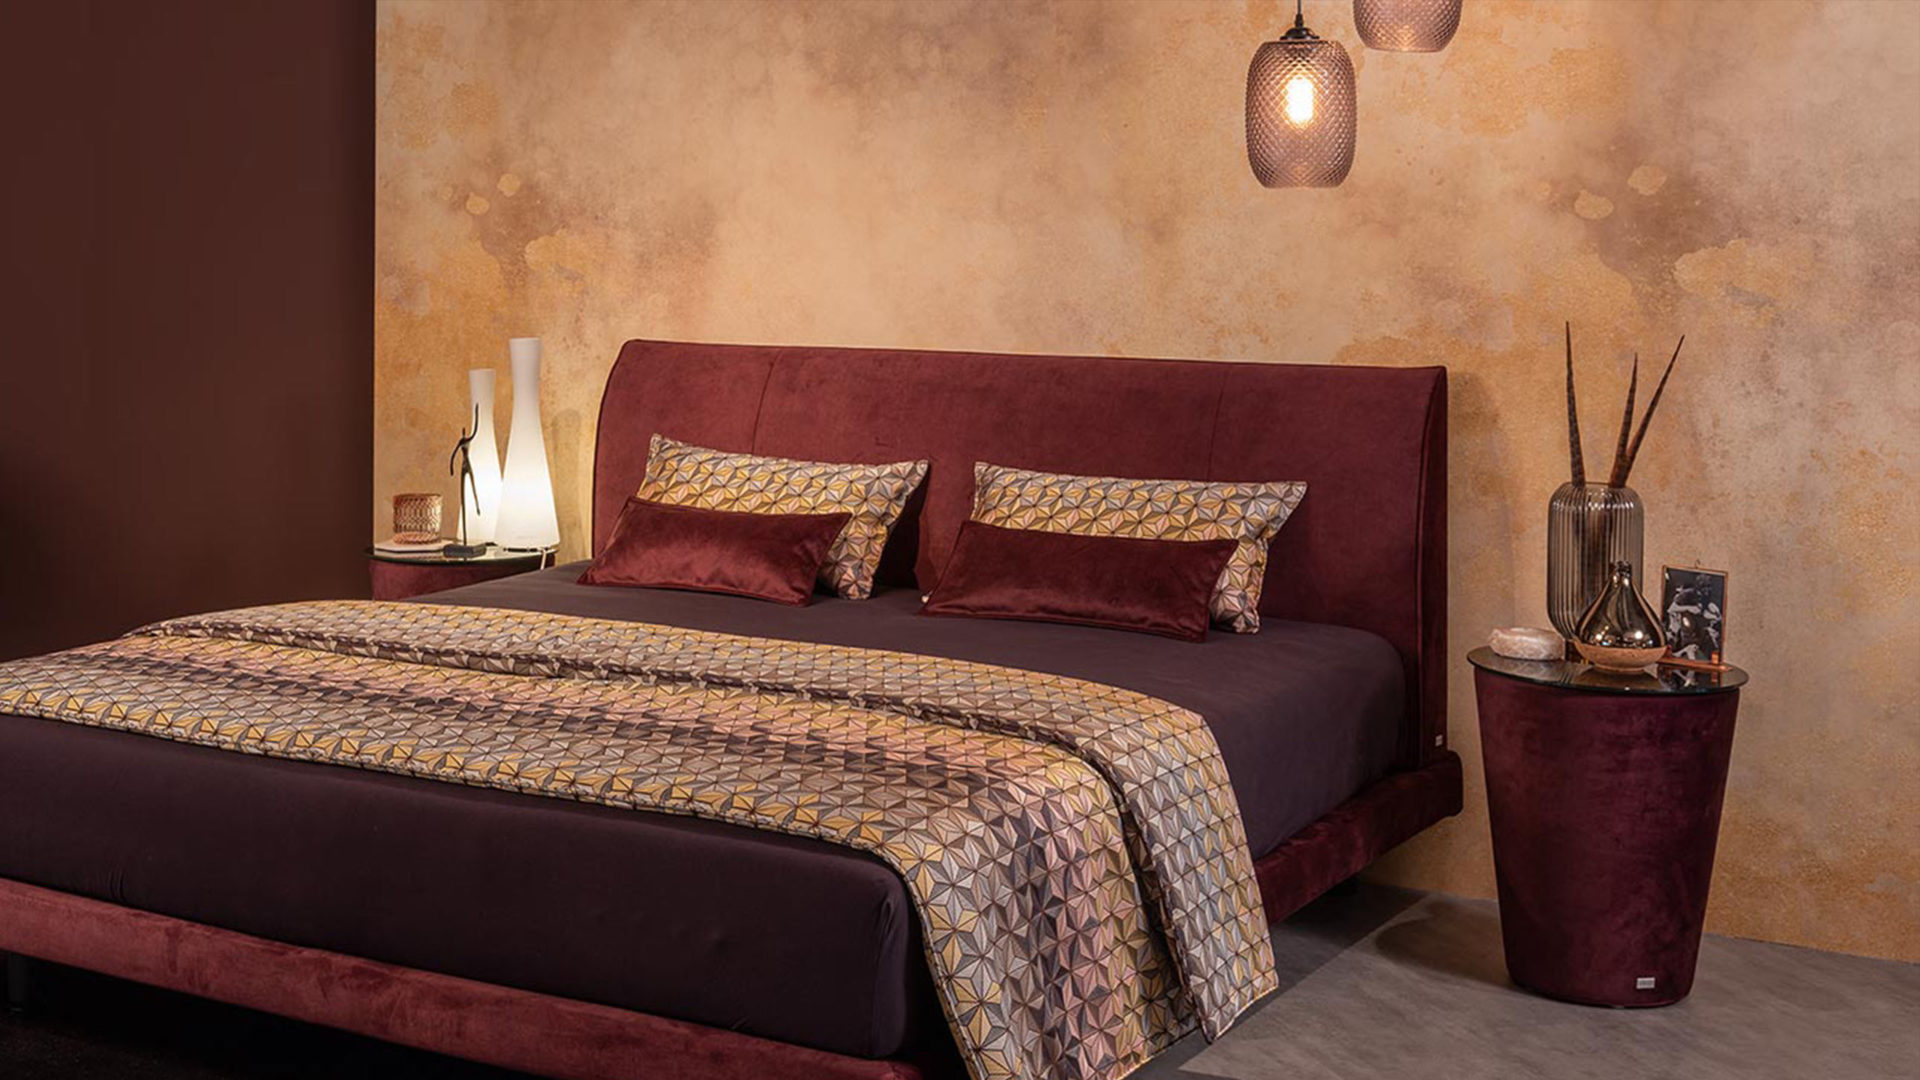 orientalisches schlafzimmer mit ruf bett modena in samt rot